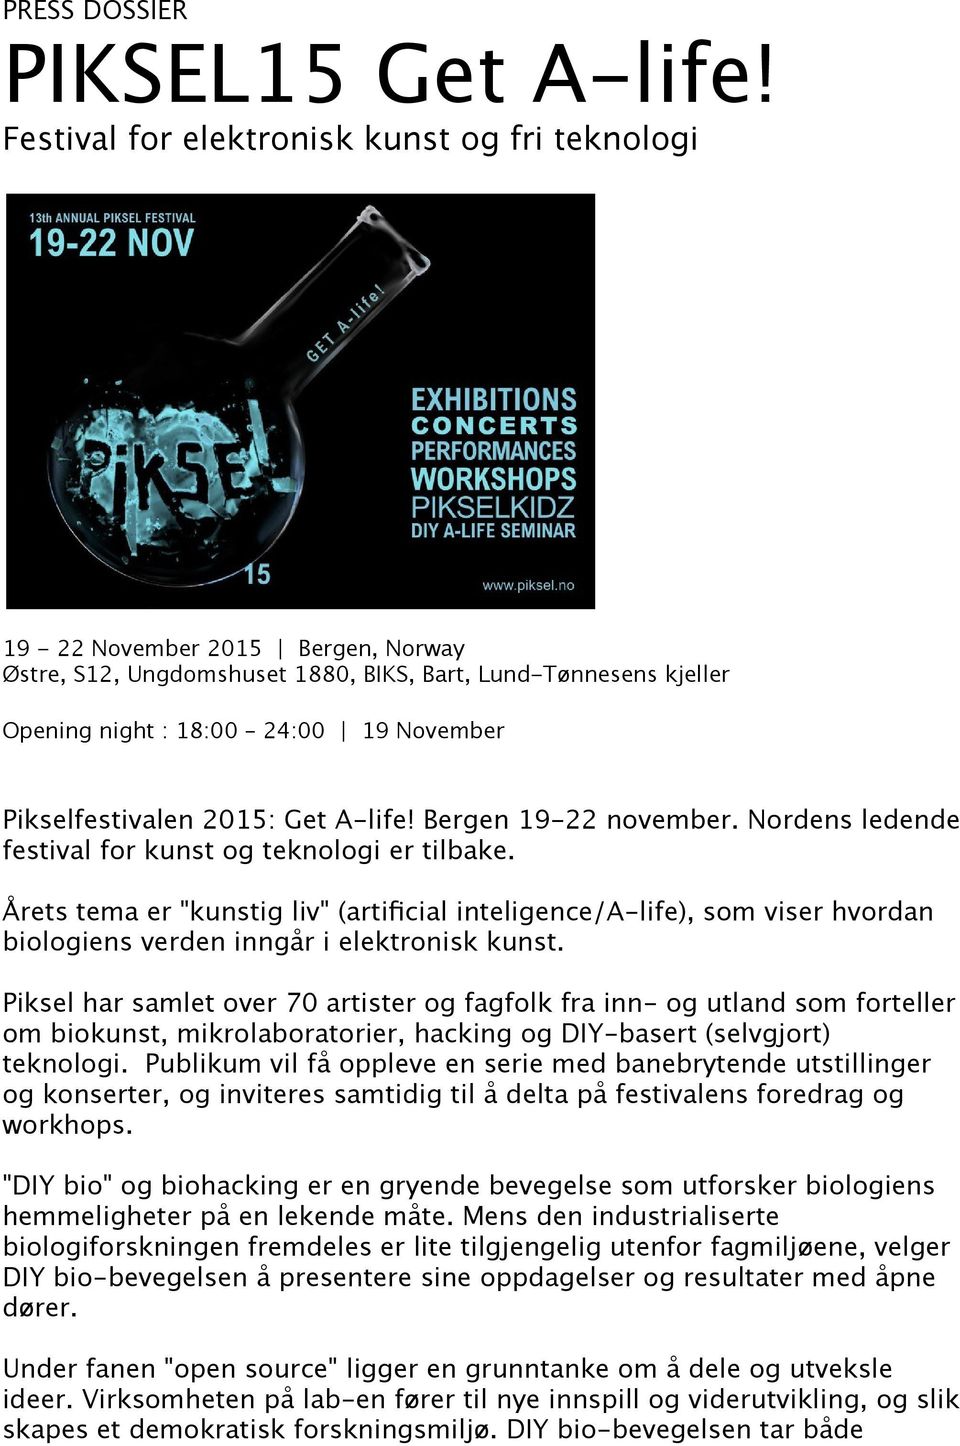 Pikselfestivalen 2015: Get A-life! Bergen 19-22 november. Nordens ledende festival for kunst og teknologi er tilbake.